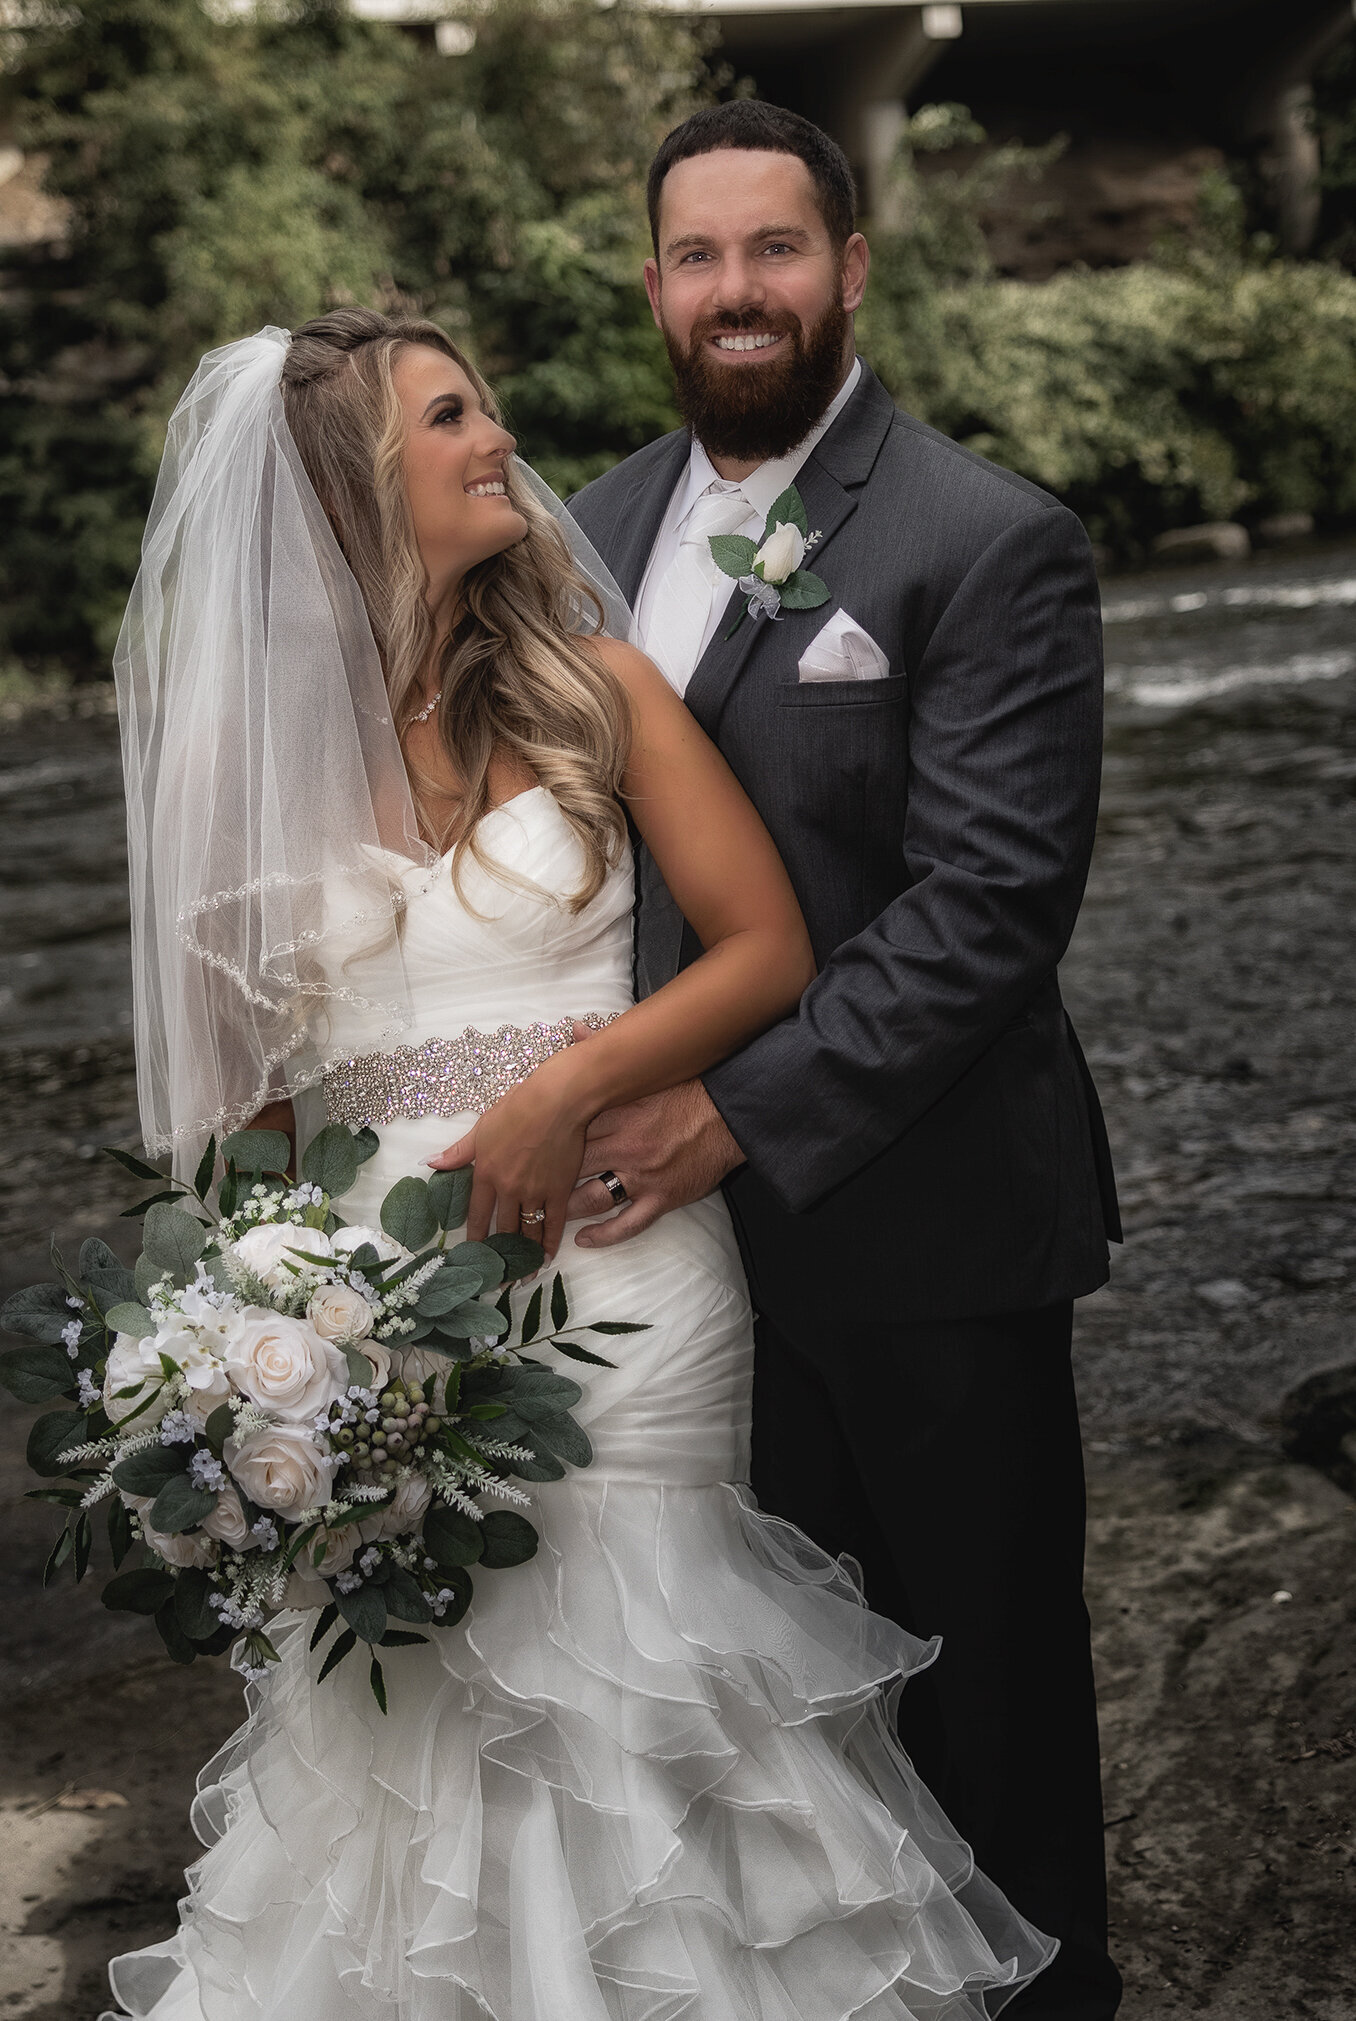 Cleveland Wedding Photography wedding photography (38 of 46)